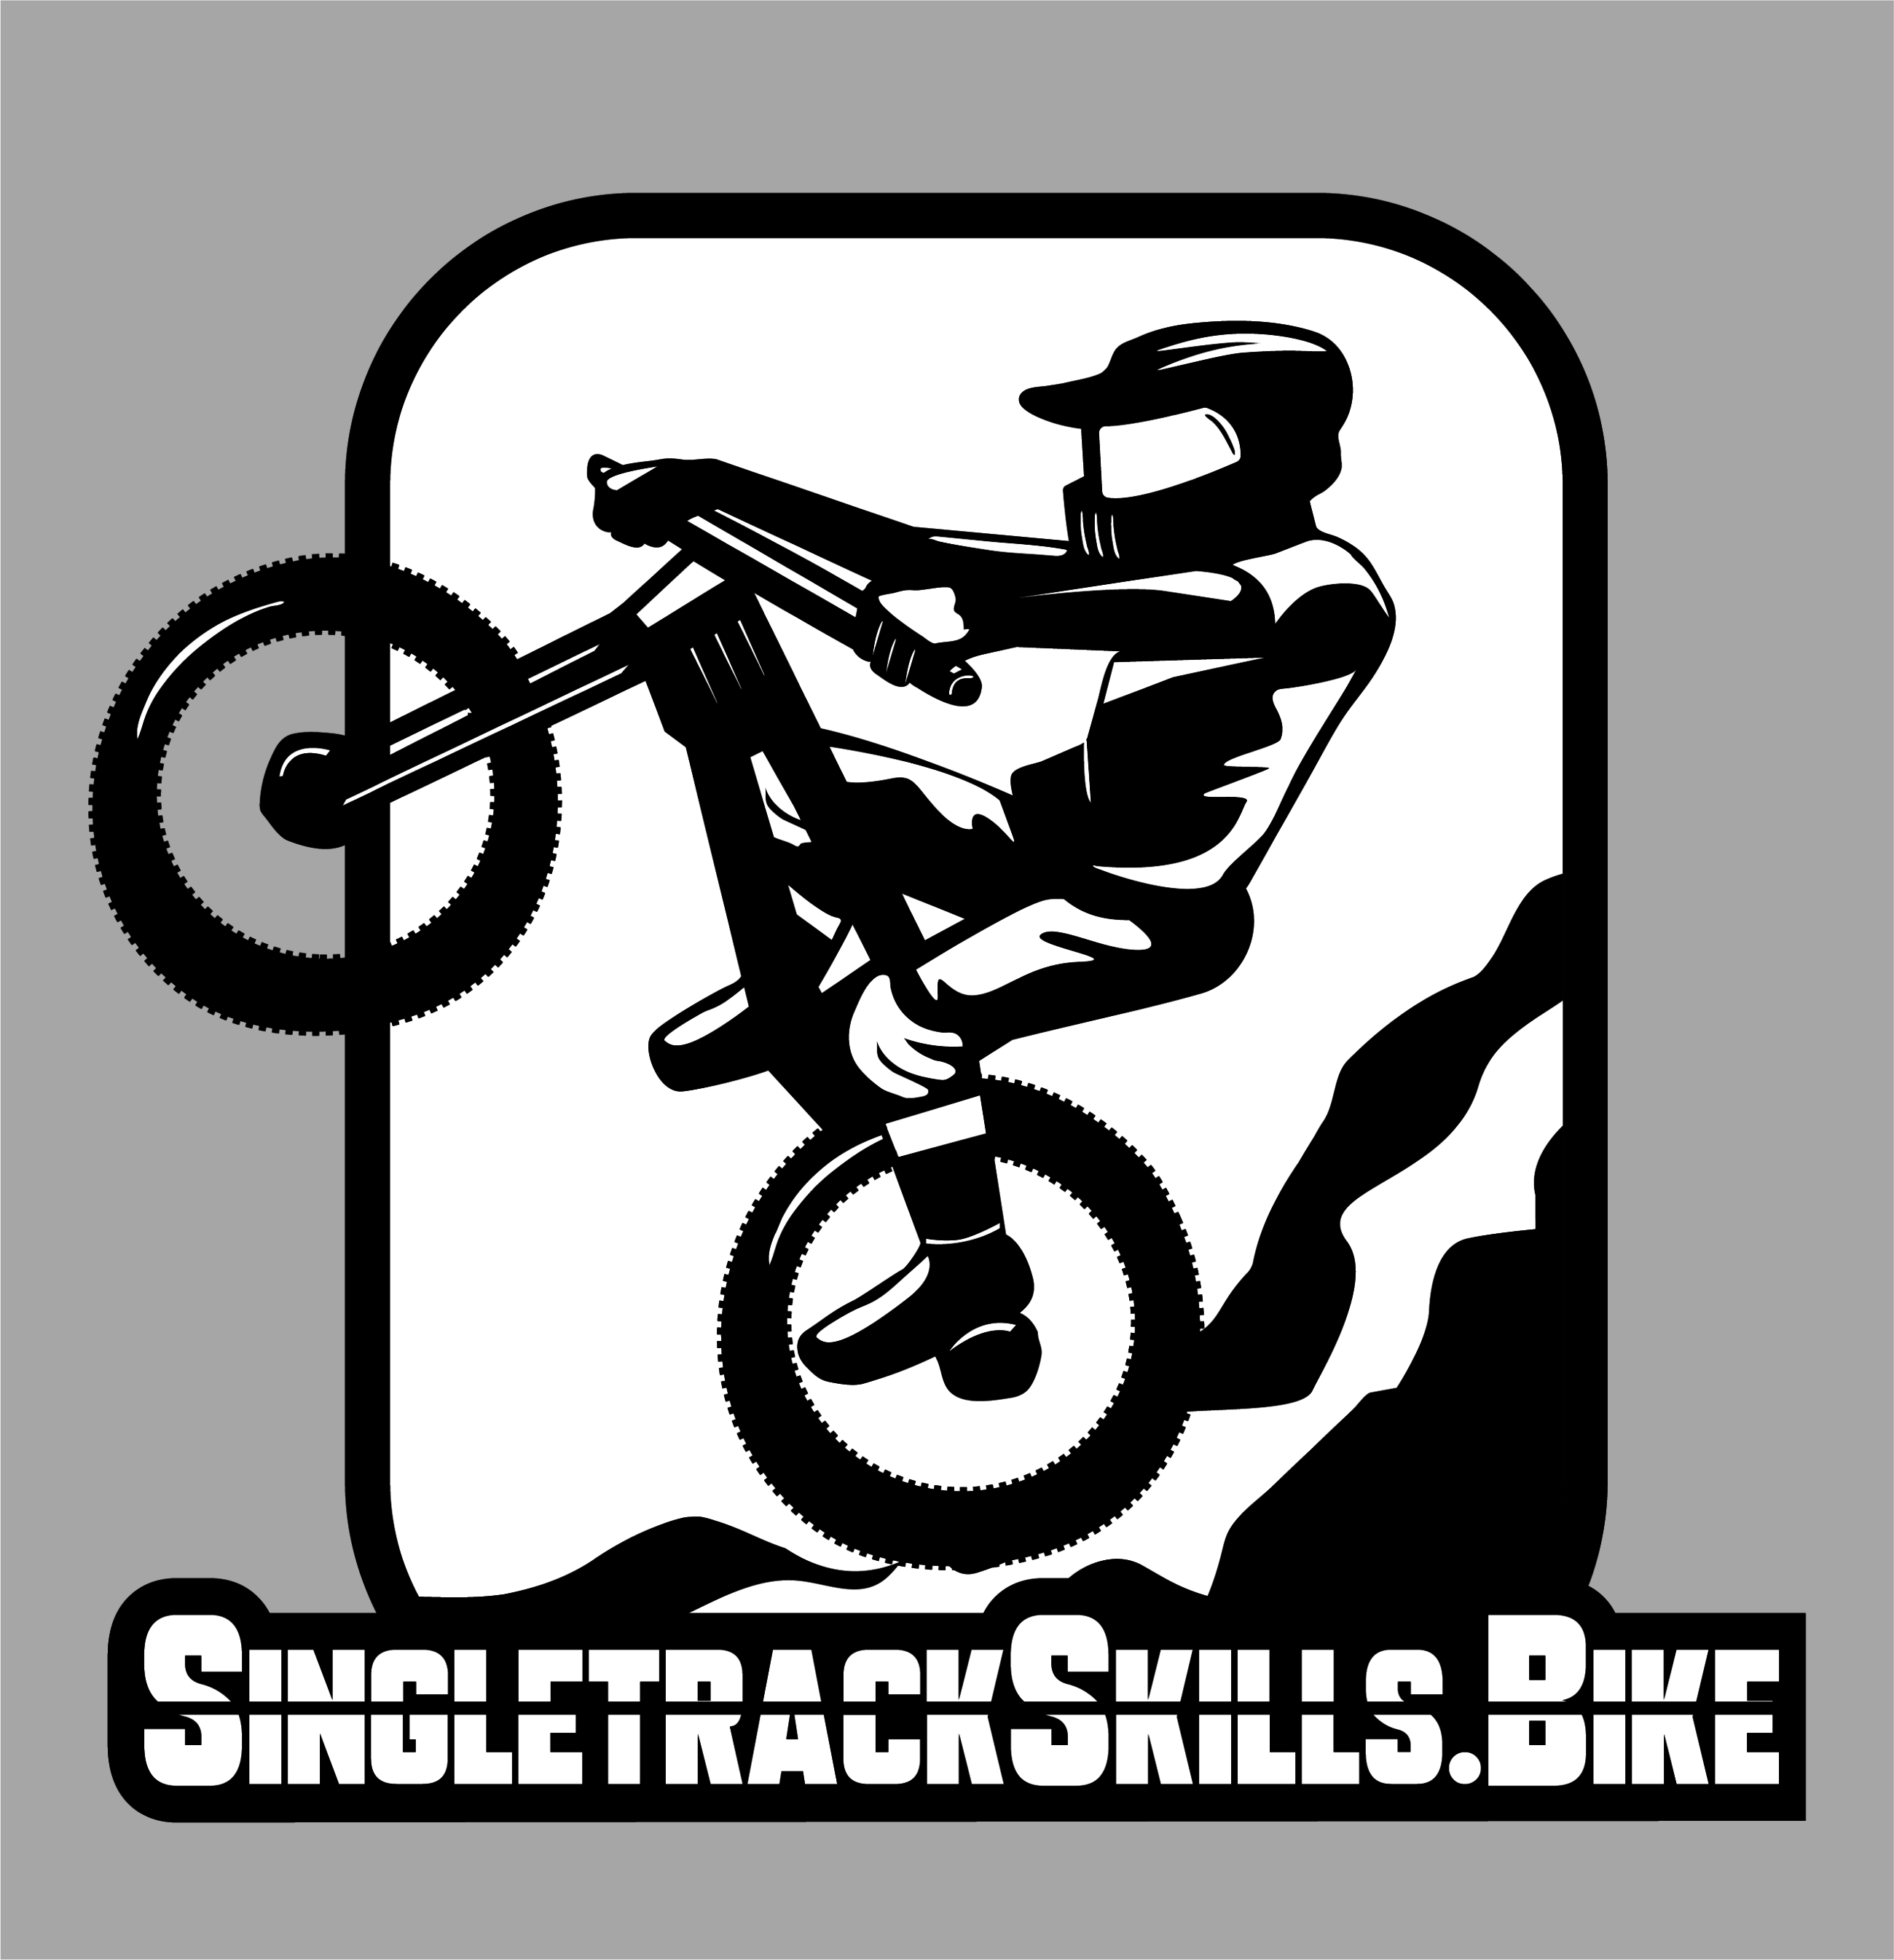 (c) Singletrackskills.bike